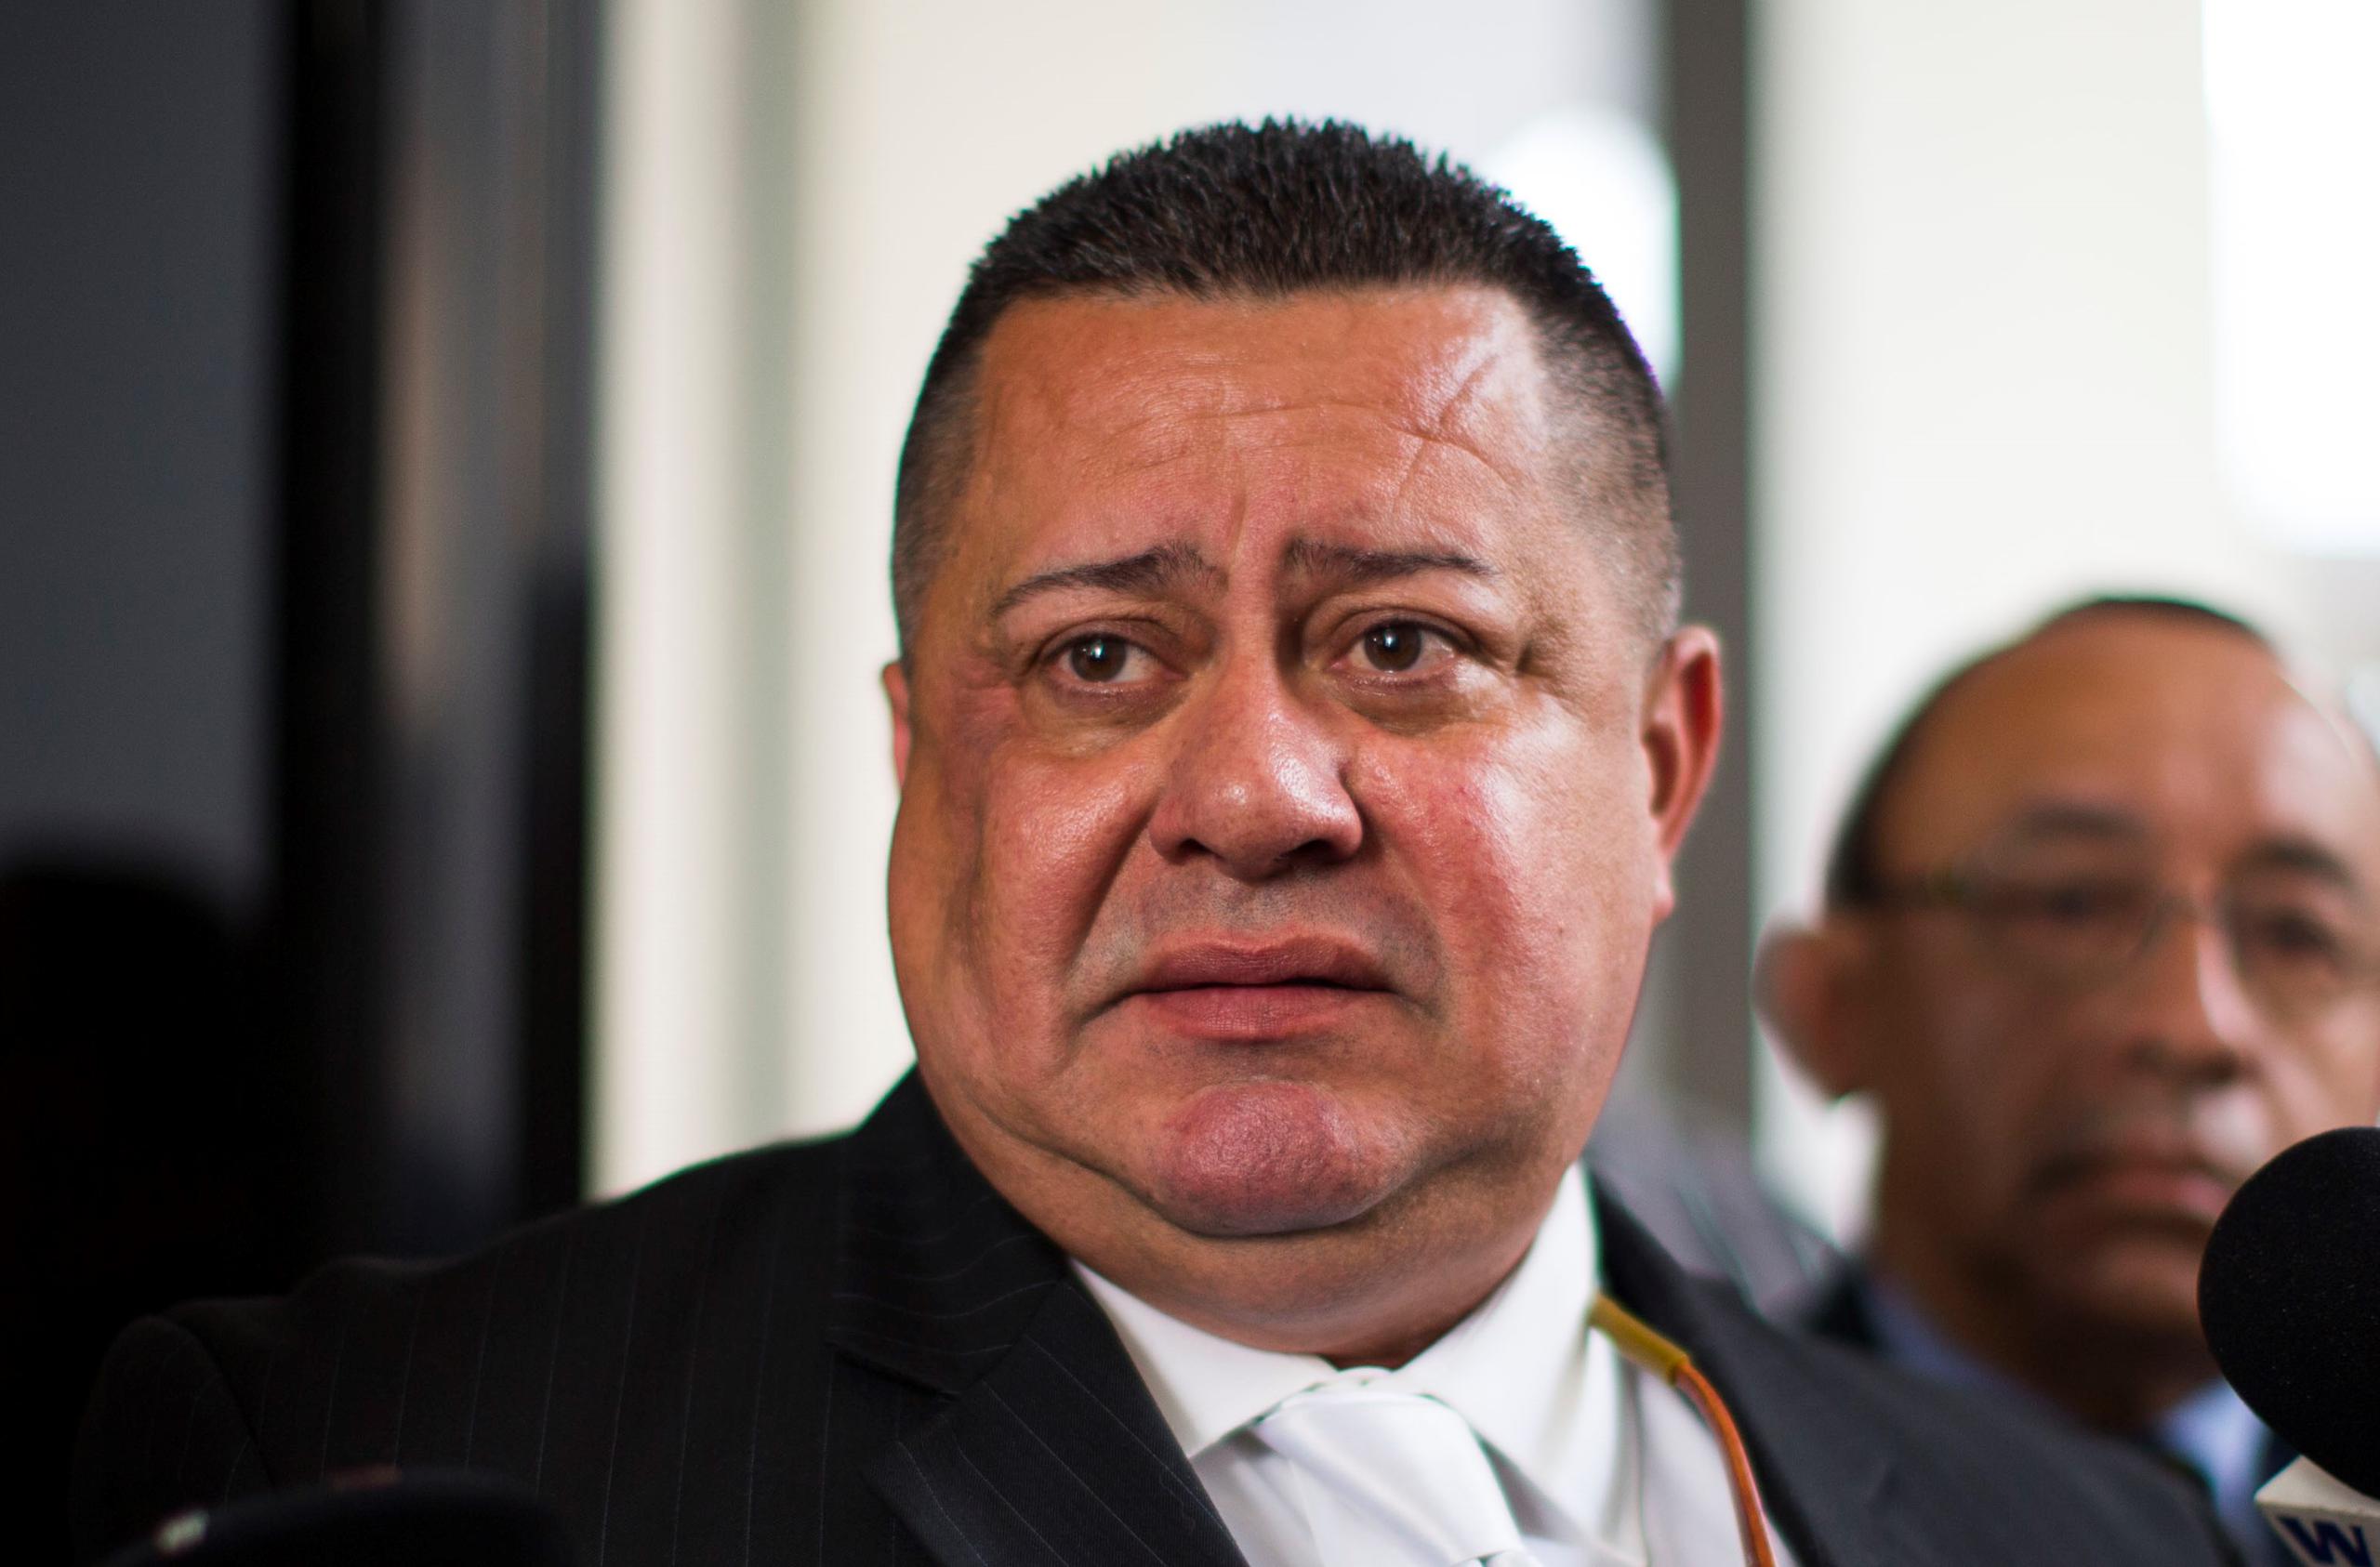 "En todo momento estamos en desventaja con los criminales", aseguró Jaime Morales, presidente ejecutivo de la Corporación de Policías Organizados y Seguridad.